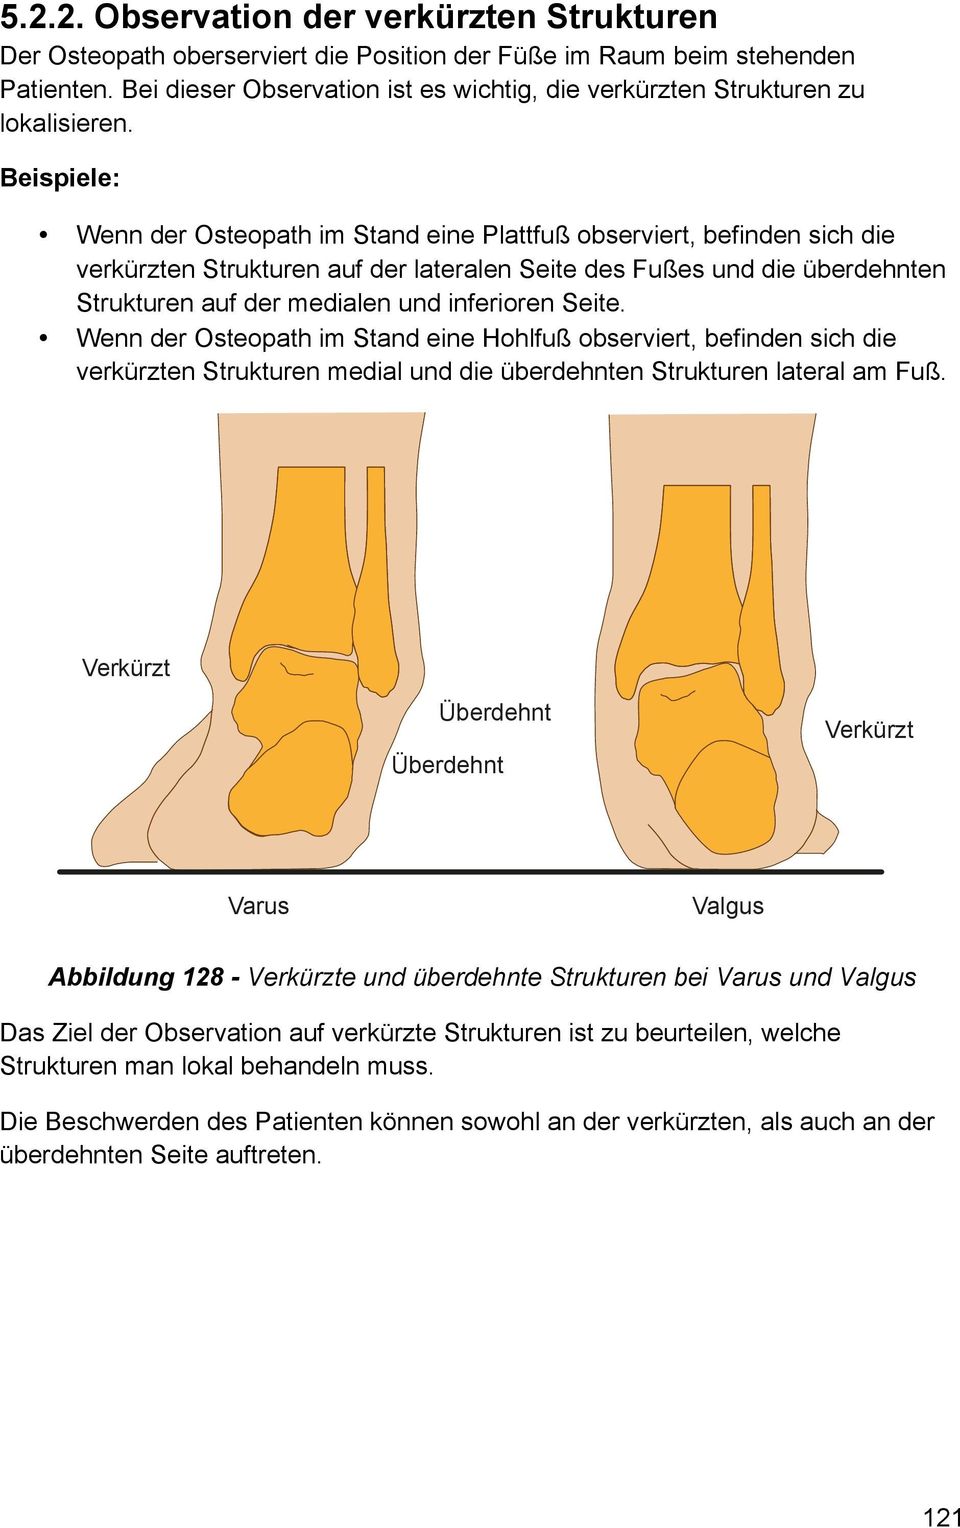 Beispiele: Wenn der Osteopath im Stand eine Plattfuß observiert, befinden sich die verkürzten Strukturen auf der lateralen Seite des Fußes und die überdehnten Strukturen auf der medialen und